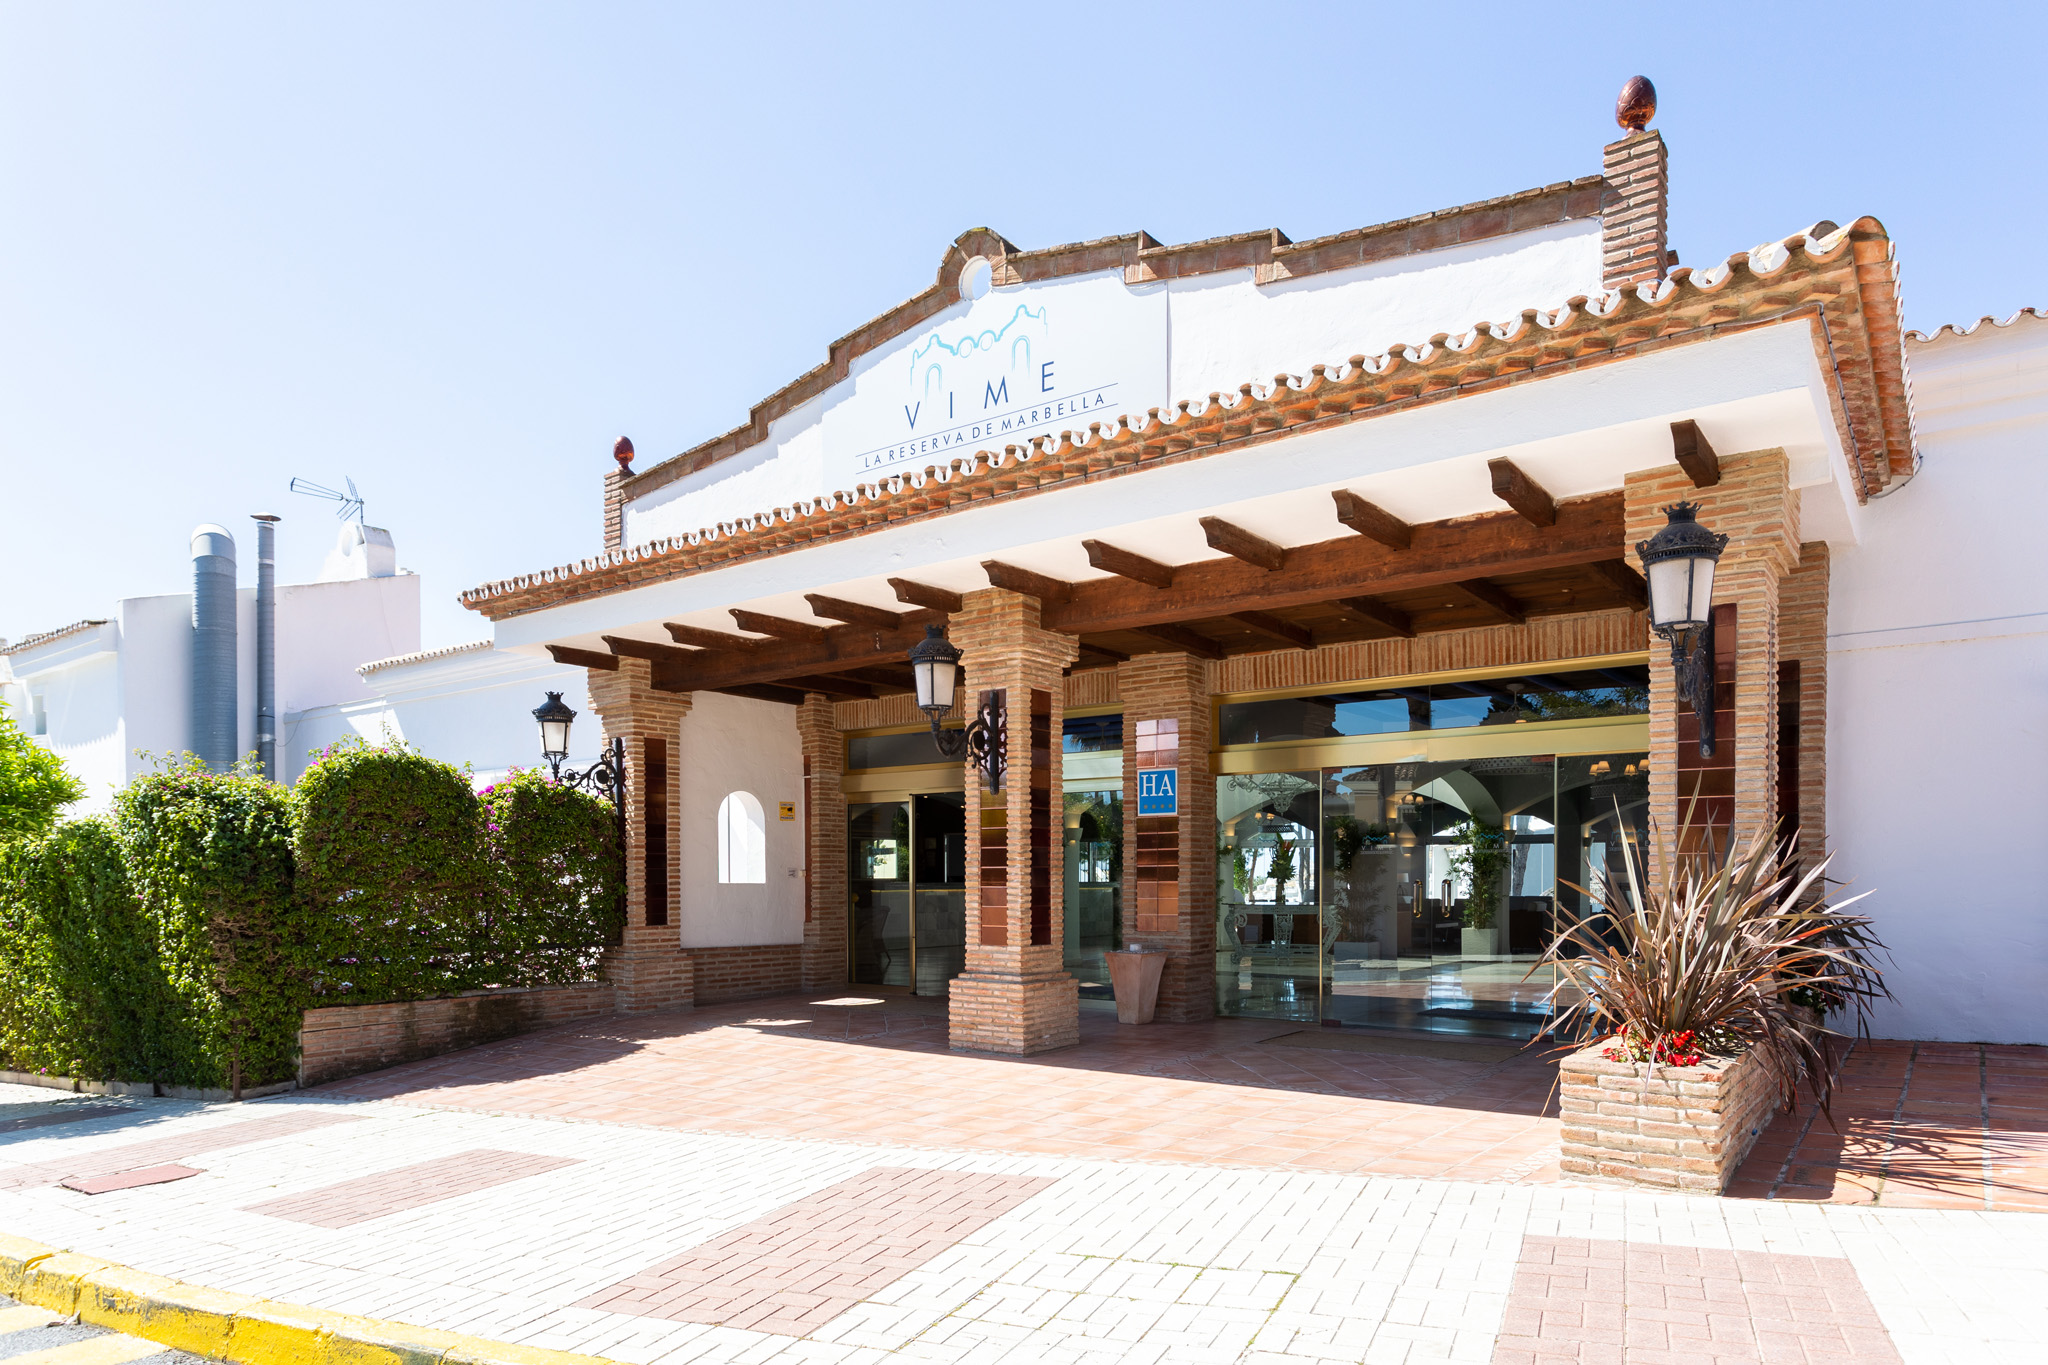 Hotel Vime La Reserva de Marbella | Marbella - Málaga |  - Offizielle Webseite